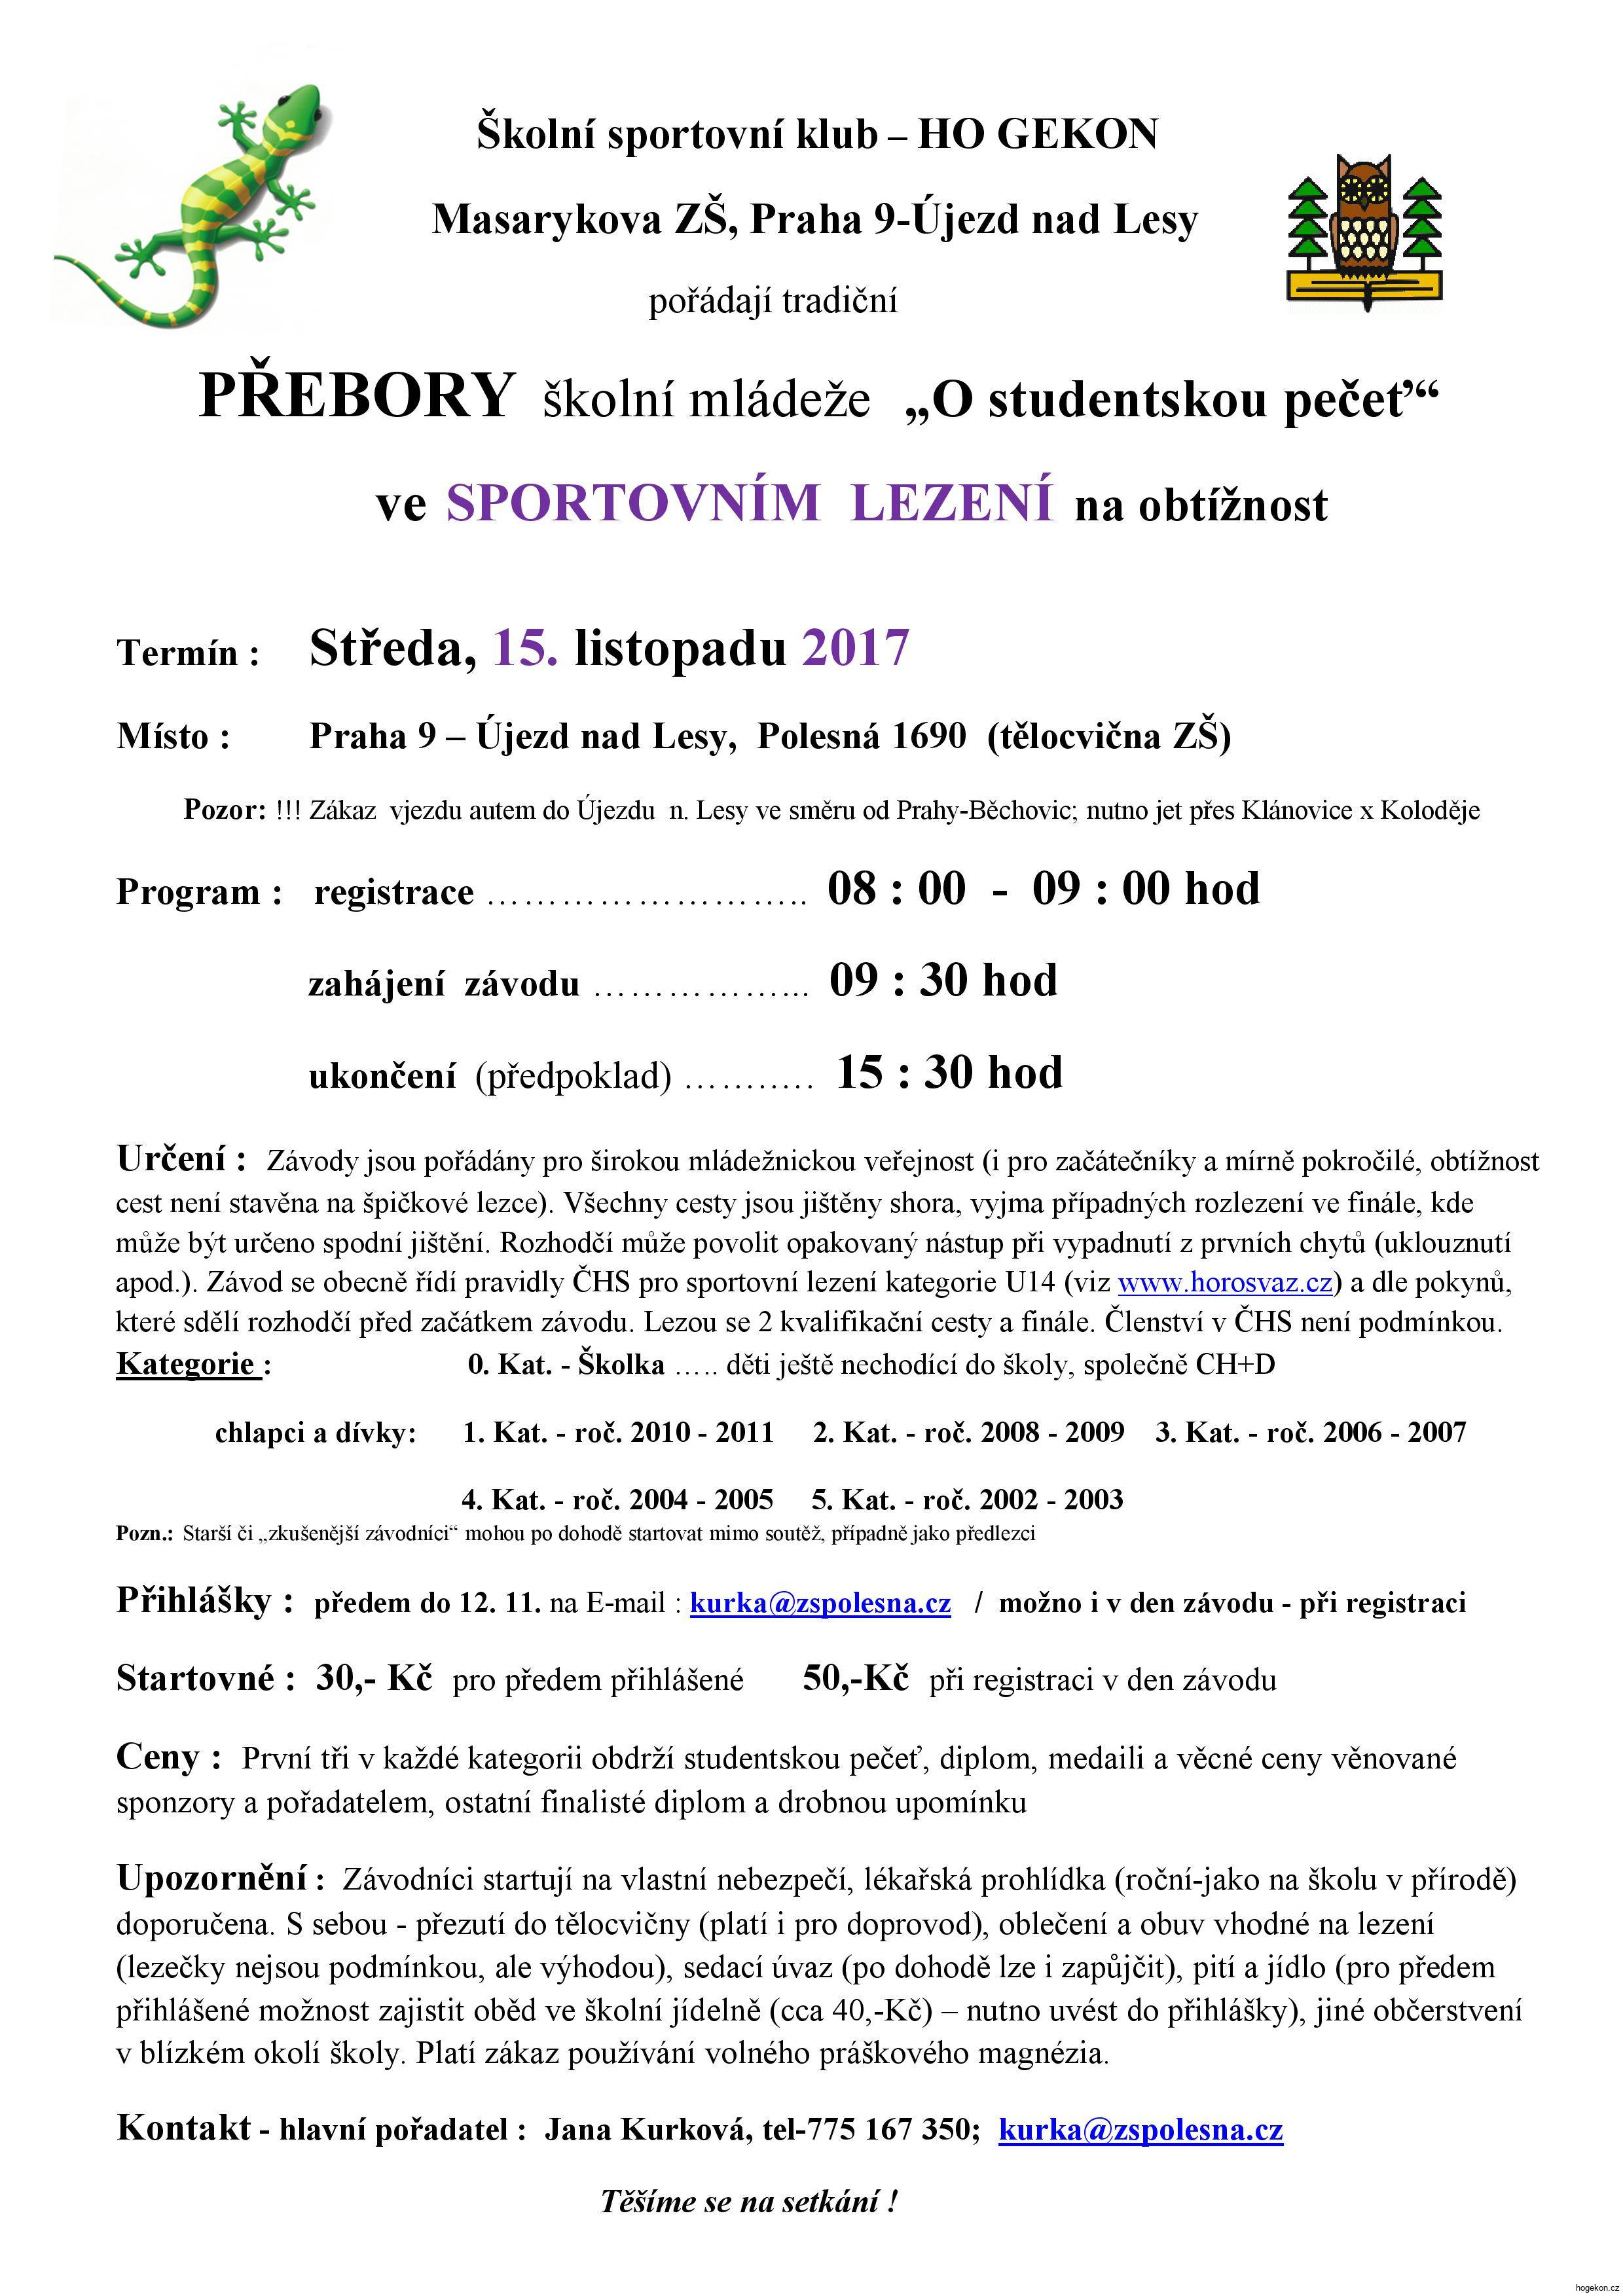 propozice PŘEBORY ŠKOLNÍ MLÁDEŽE „O STUDENTSKOU PEČEŤ“ 15.11.2017